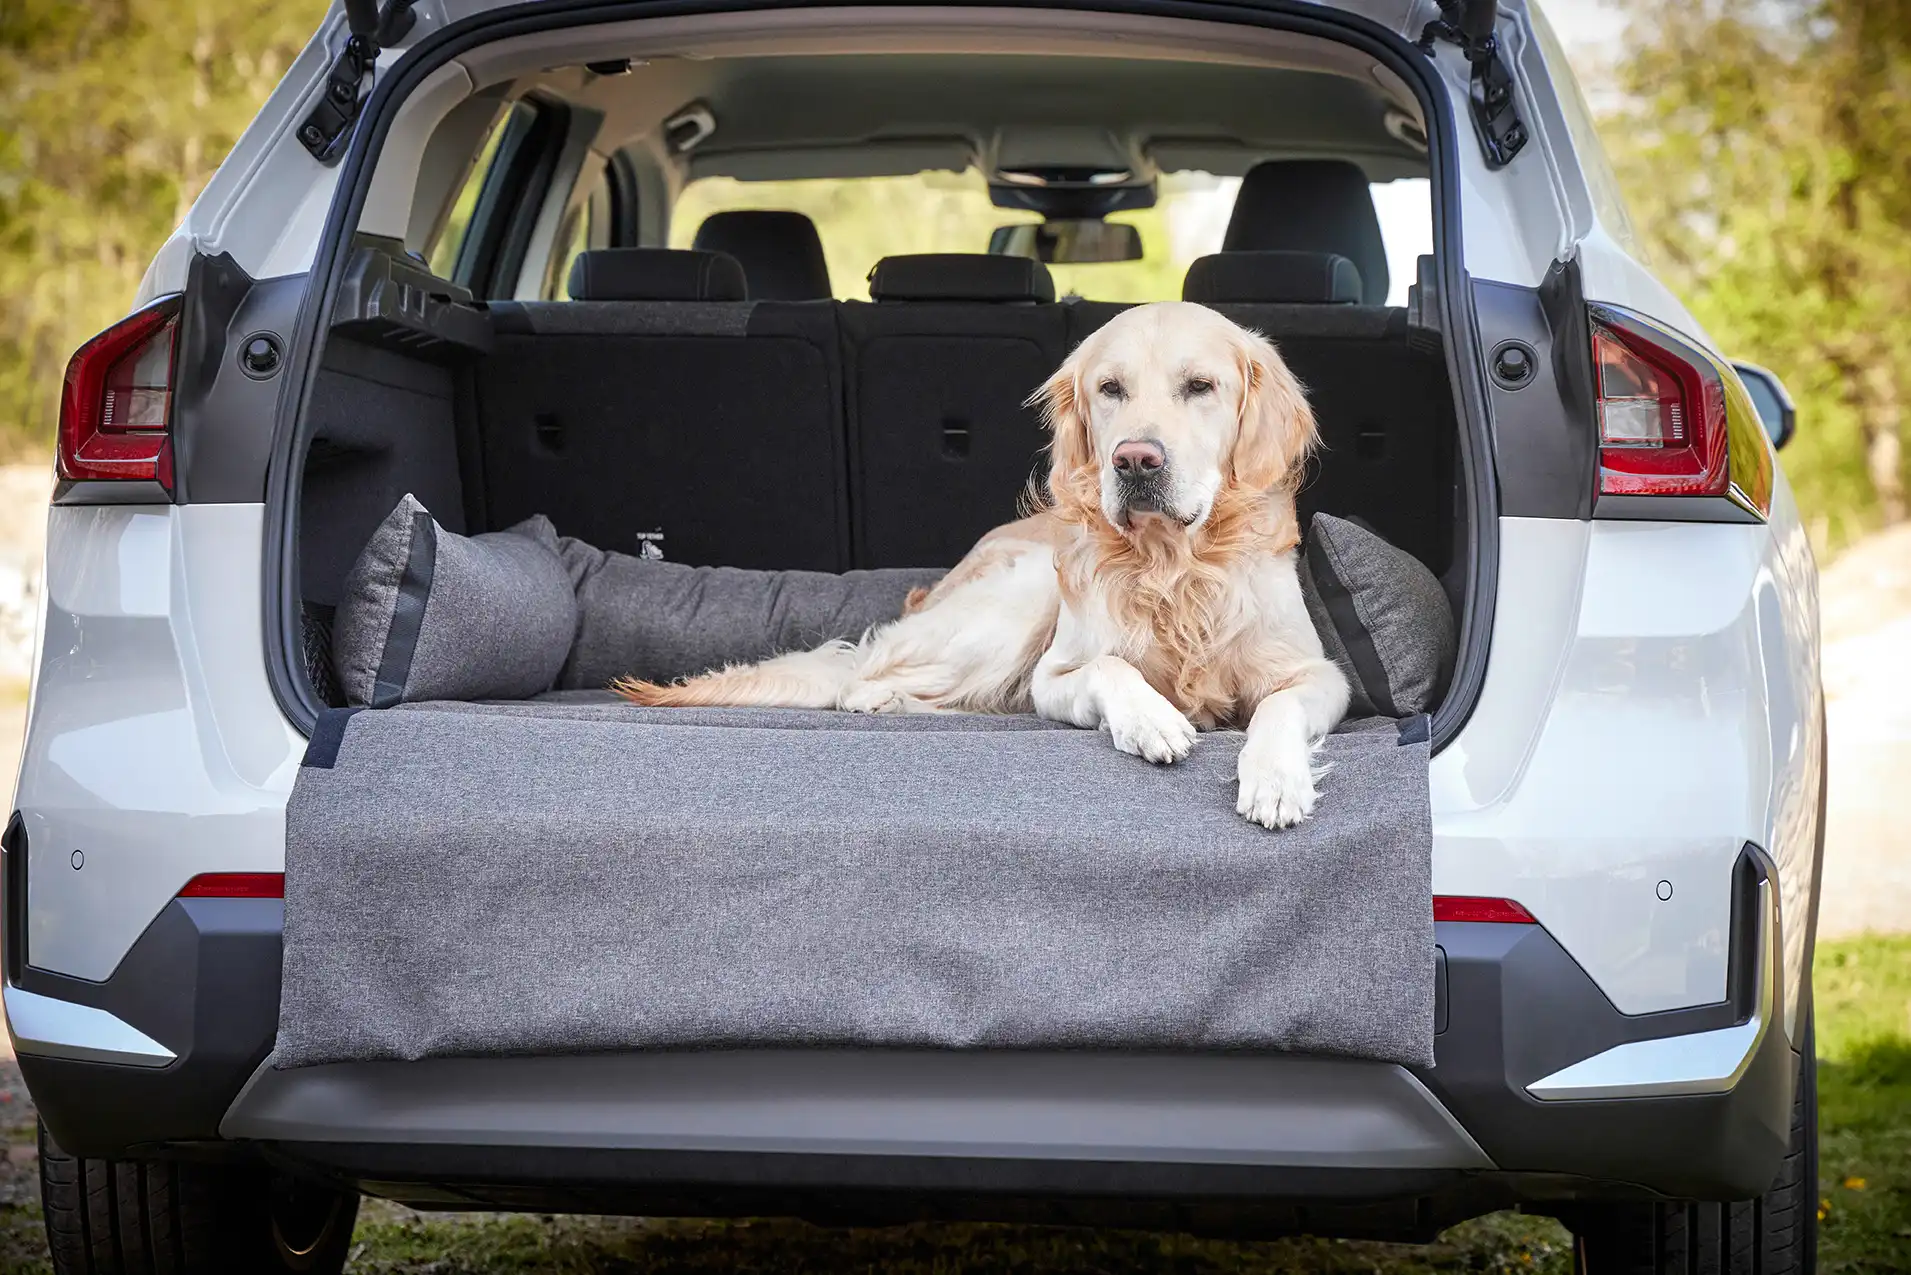 Kofferraumschutz für Hunde - so bleibt dein Auto sauber!